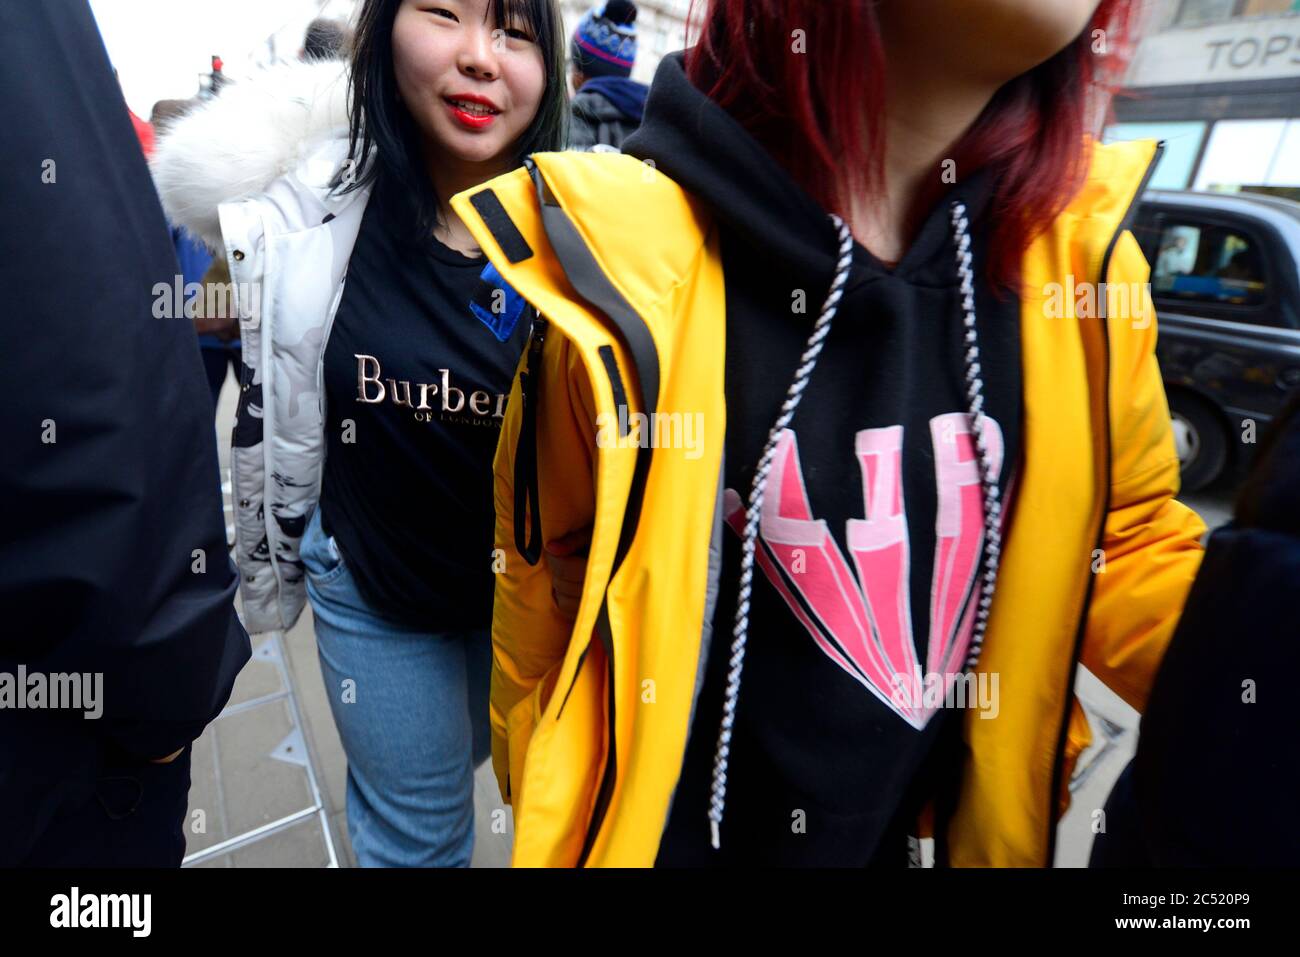 Londres, Angleterre, Royaume-Uni. Jeune touriste chinois dans une chemise Burberry dans le centre de Londres Banque D'Images